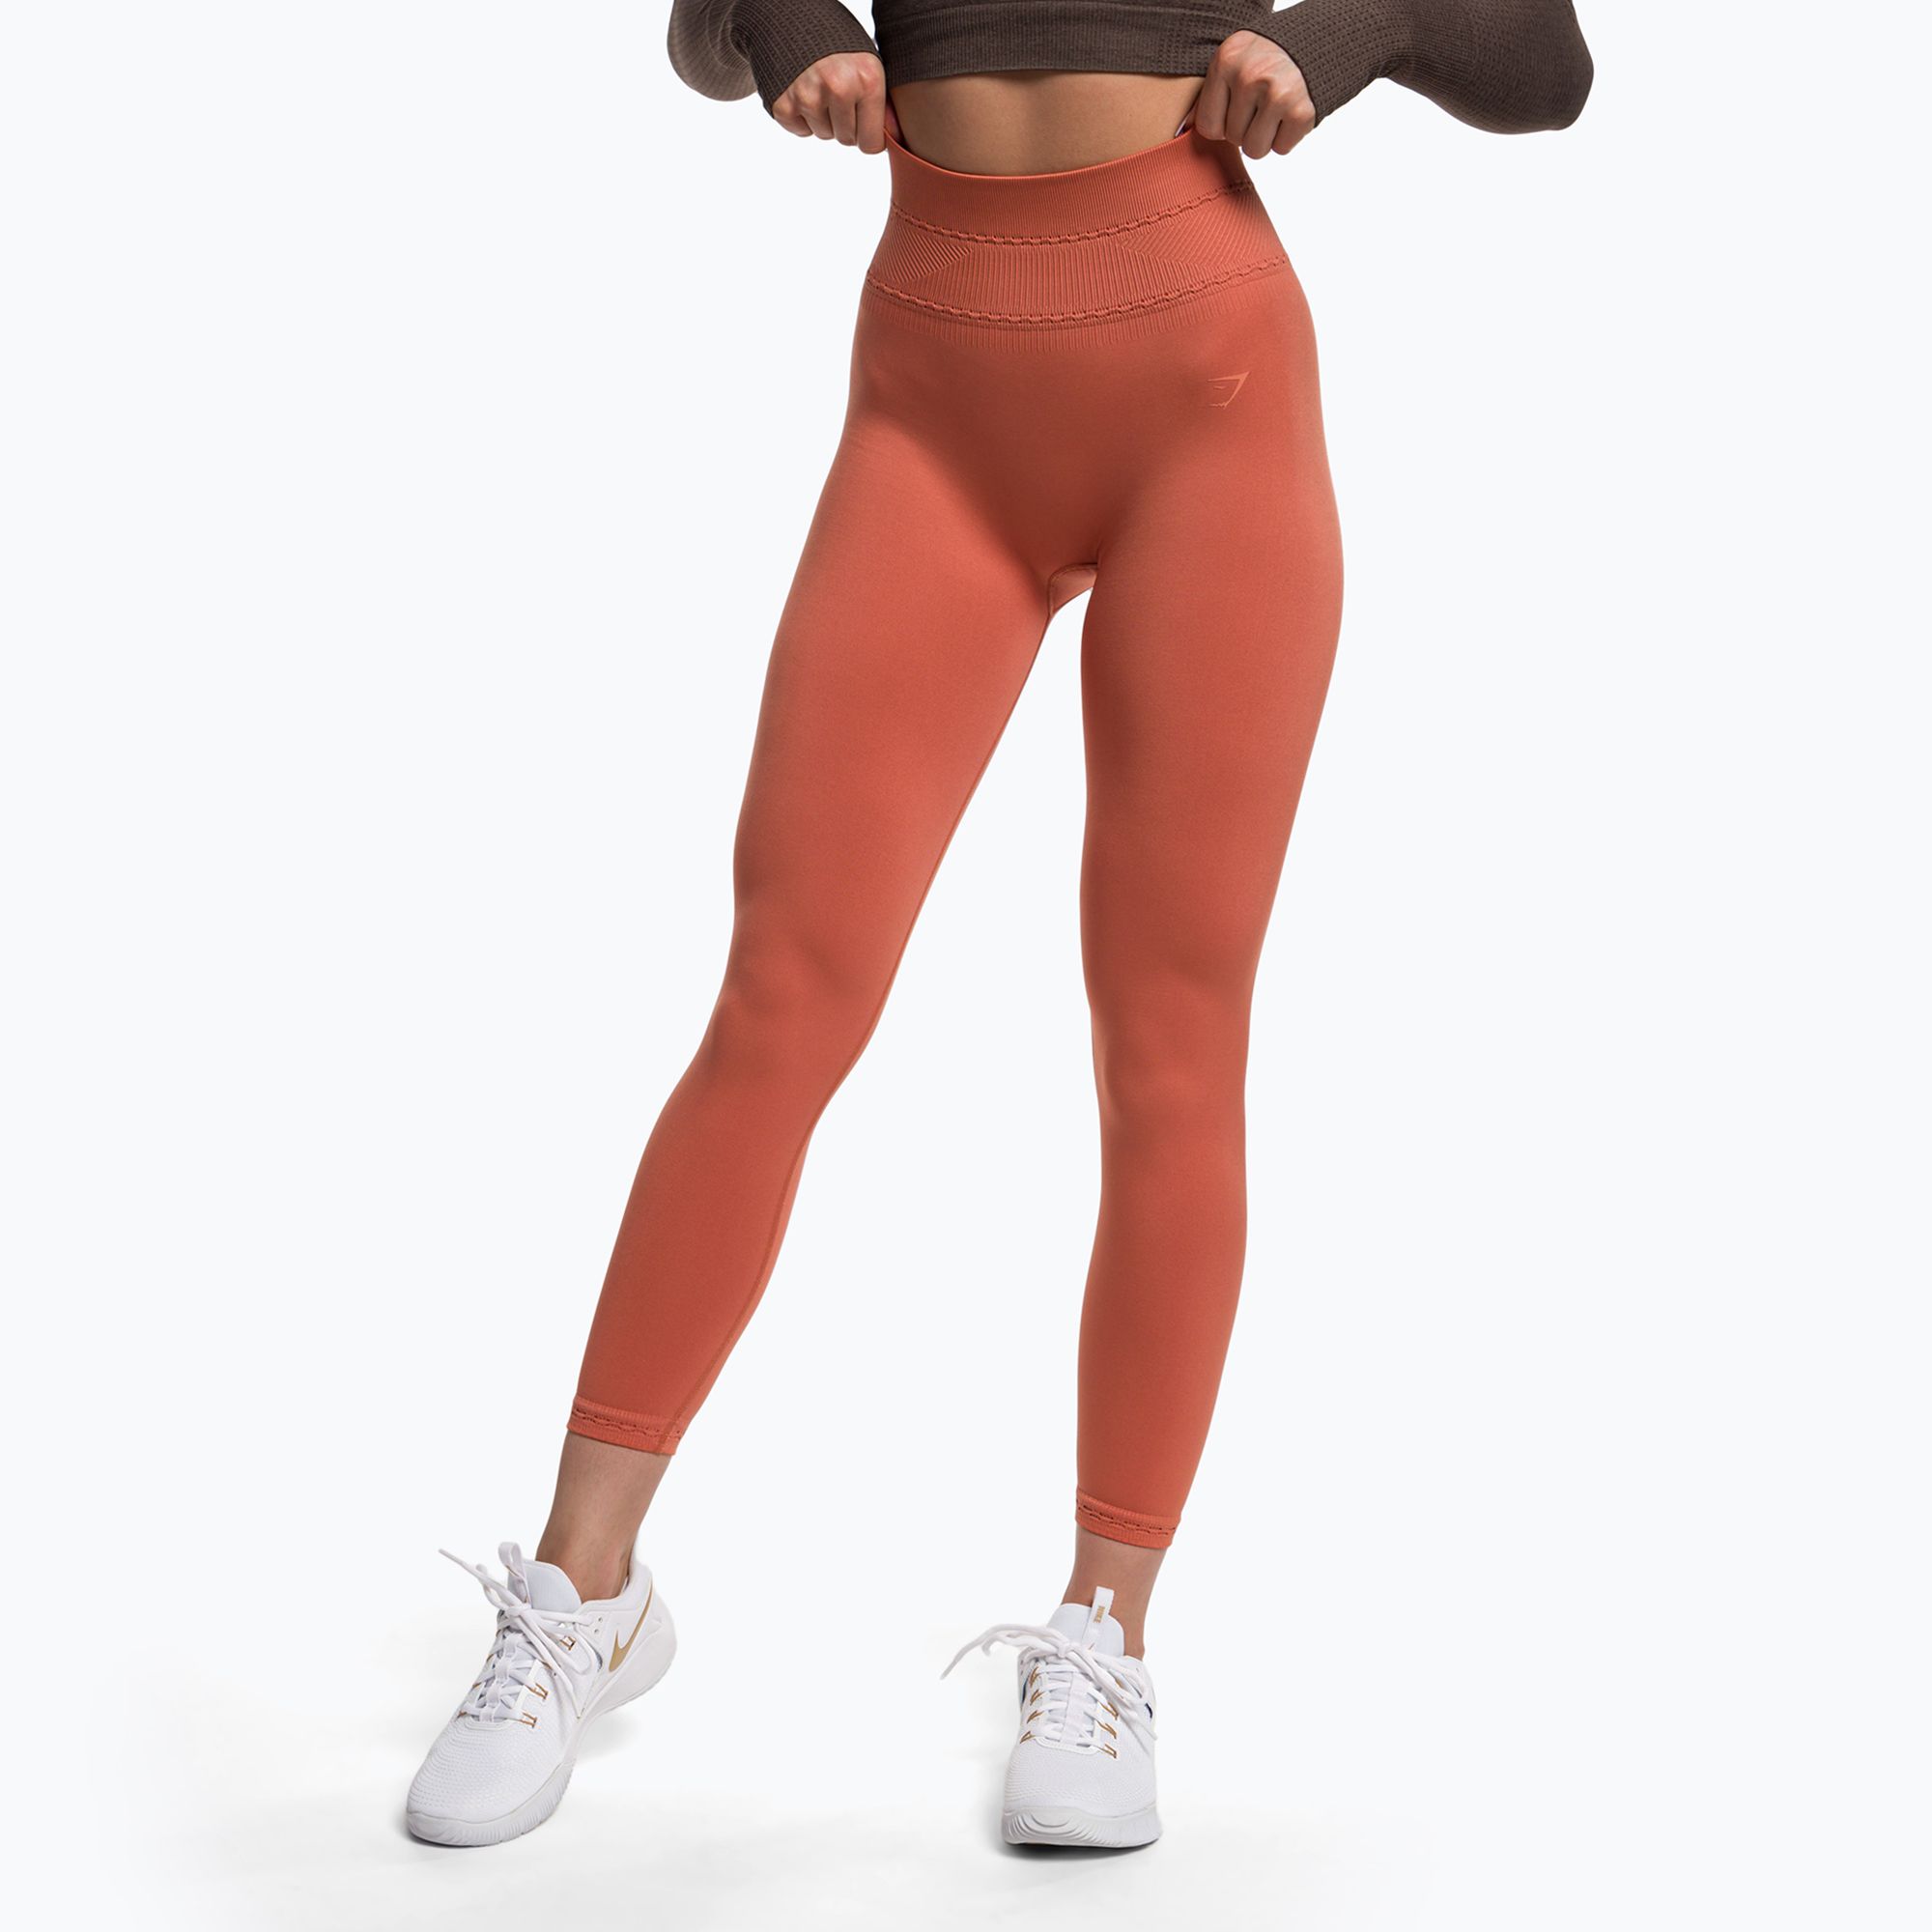 https://sportano.com/img/986c30c27a3d26a3ee16c136f92f4ff5/5/0/5057913540463_1-jpg/women-s-training-leggings-gymshark-studio-earth-orange-0.jpg